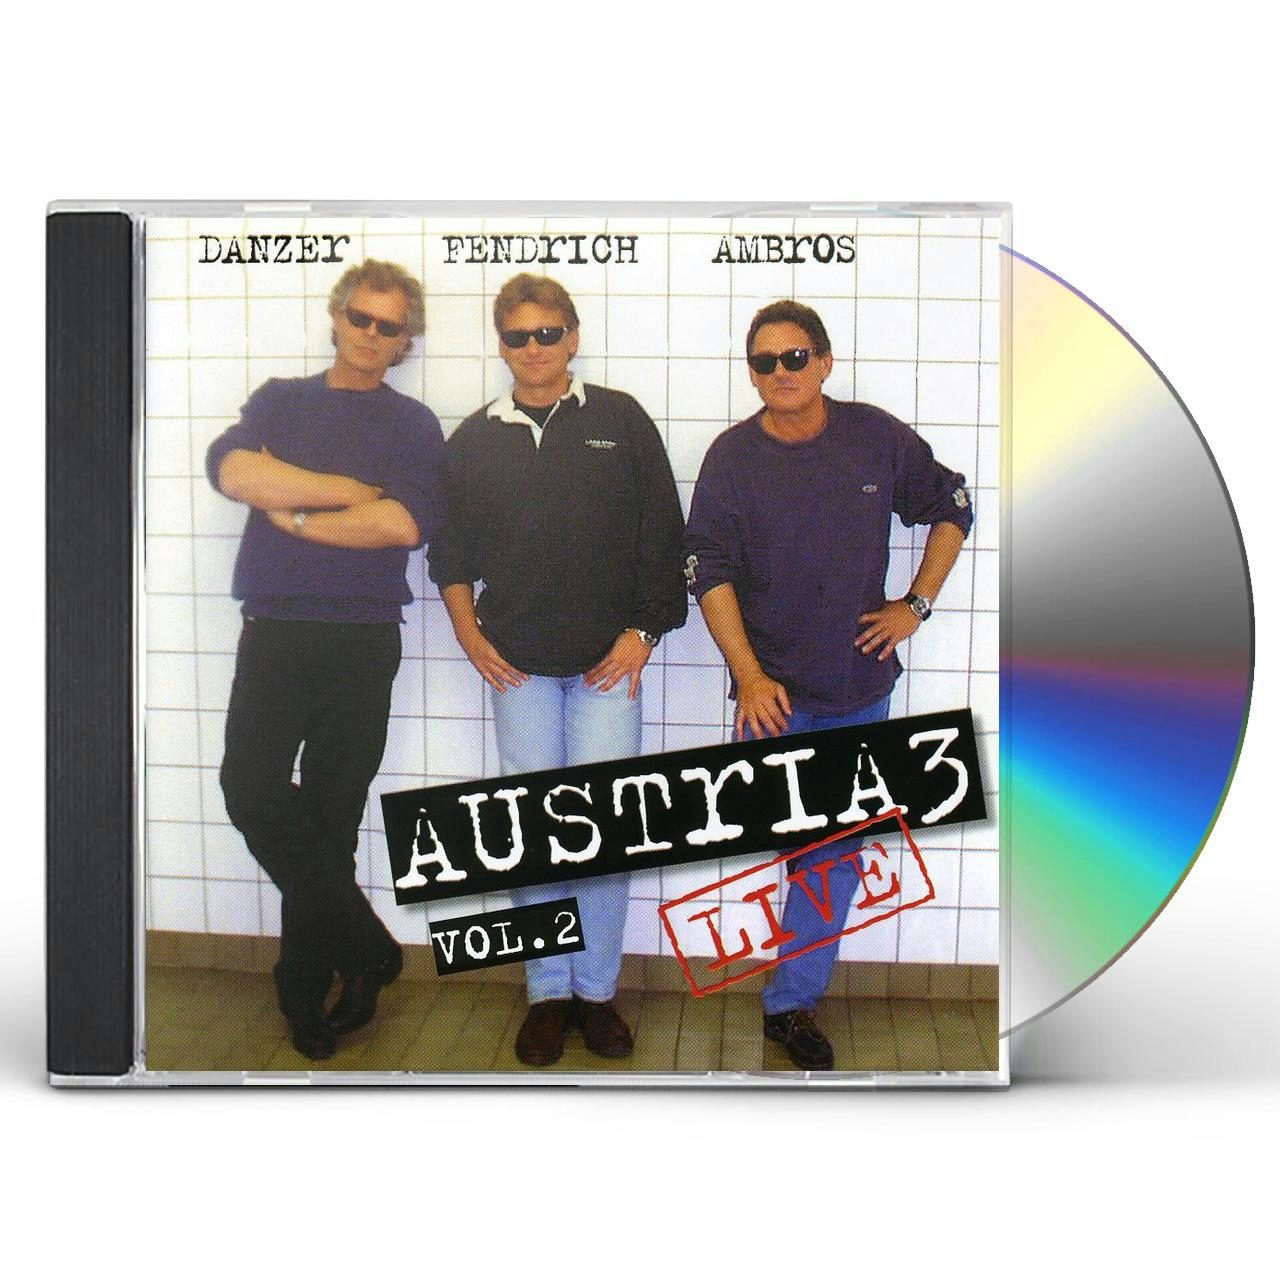 CD - Austria 3